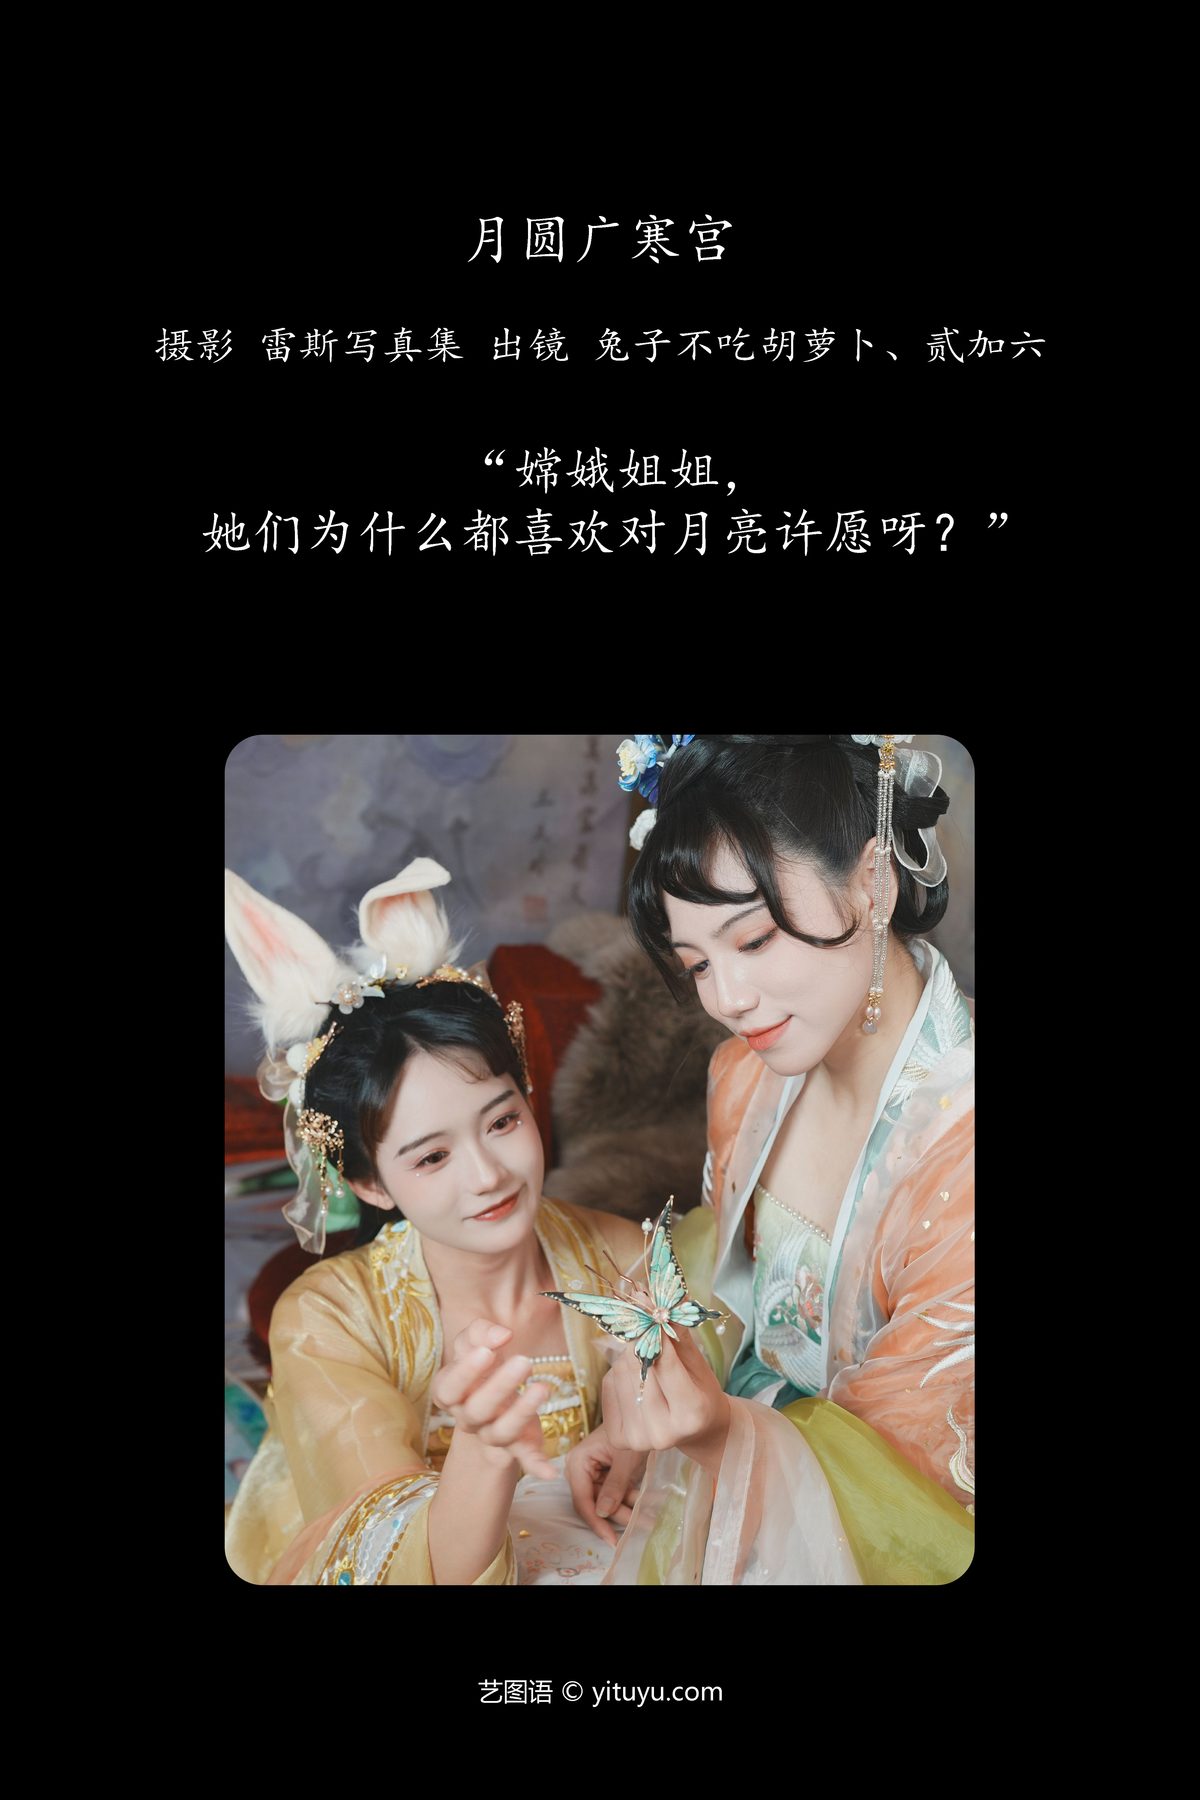 YiTuYu艺图语 Vol 4829 Er Jia Liu 0002 2585007267.jpg